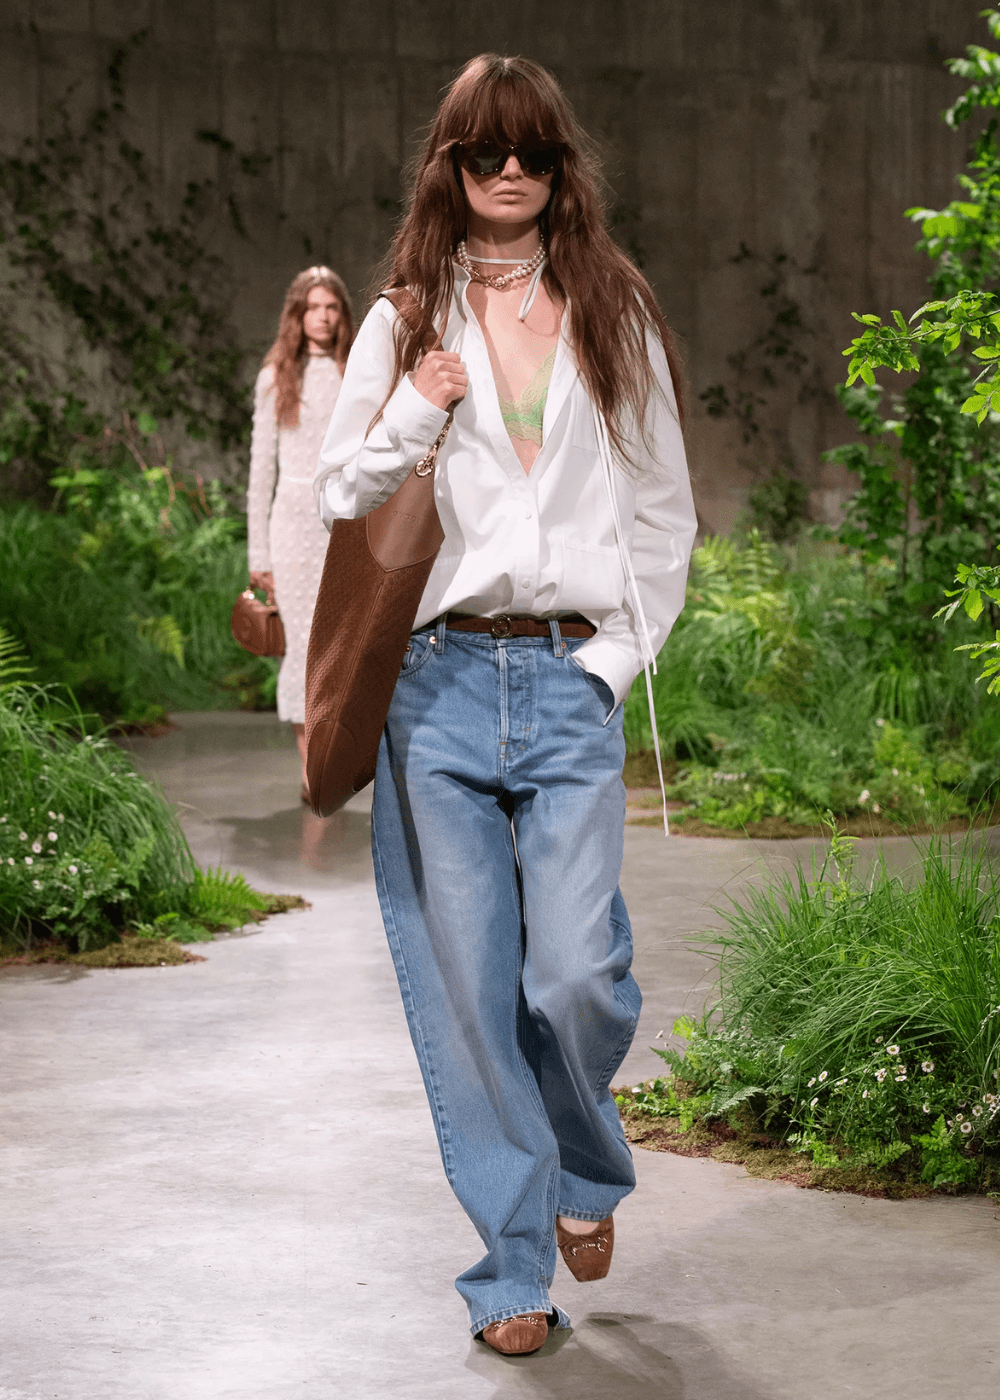 Gucci - calça jeans, camisa branca, sapatilha marrom, bolsa e óculos de sol - sapatilha da gucci - verão - mulher andando na passarela - https://stealthelook.com.br